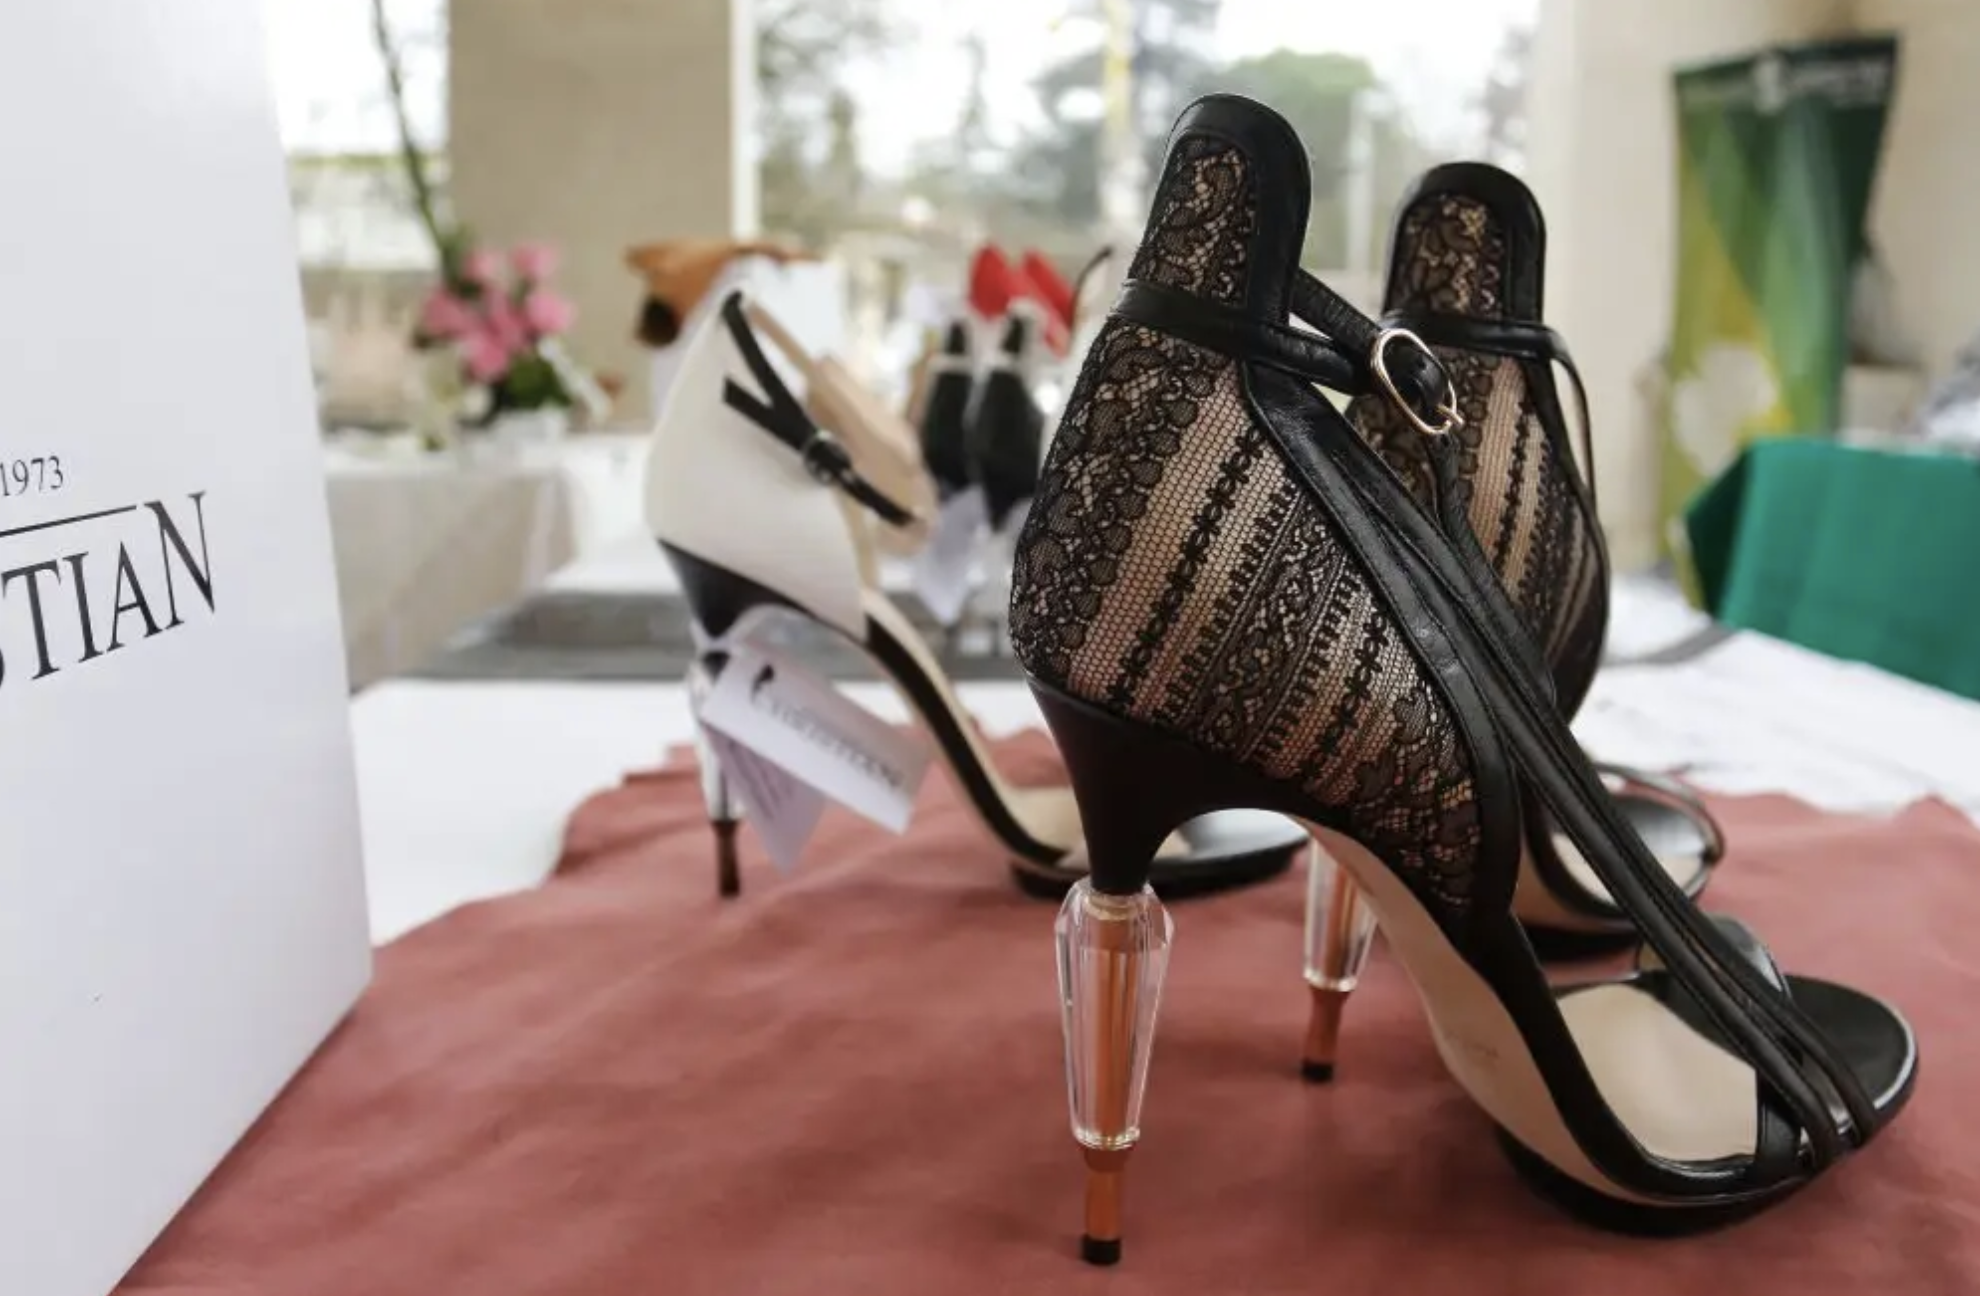 意大利高端鞋履制造区布伦塔去年鞋业收入突破20亿欧元